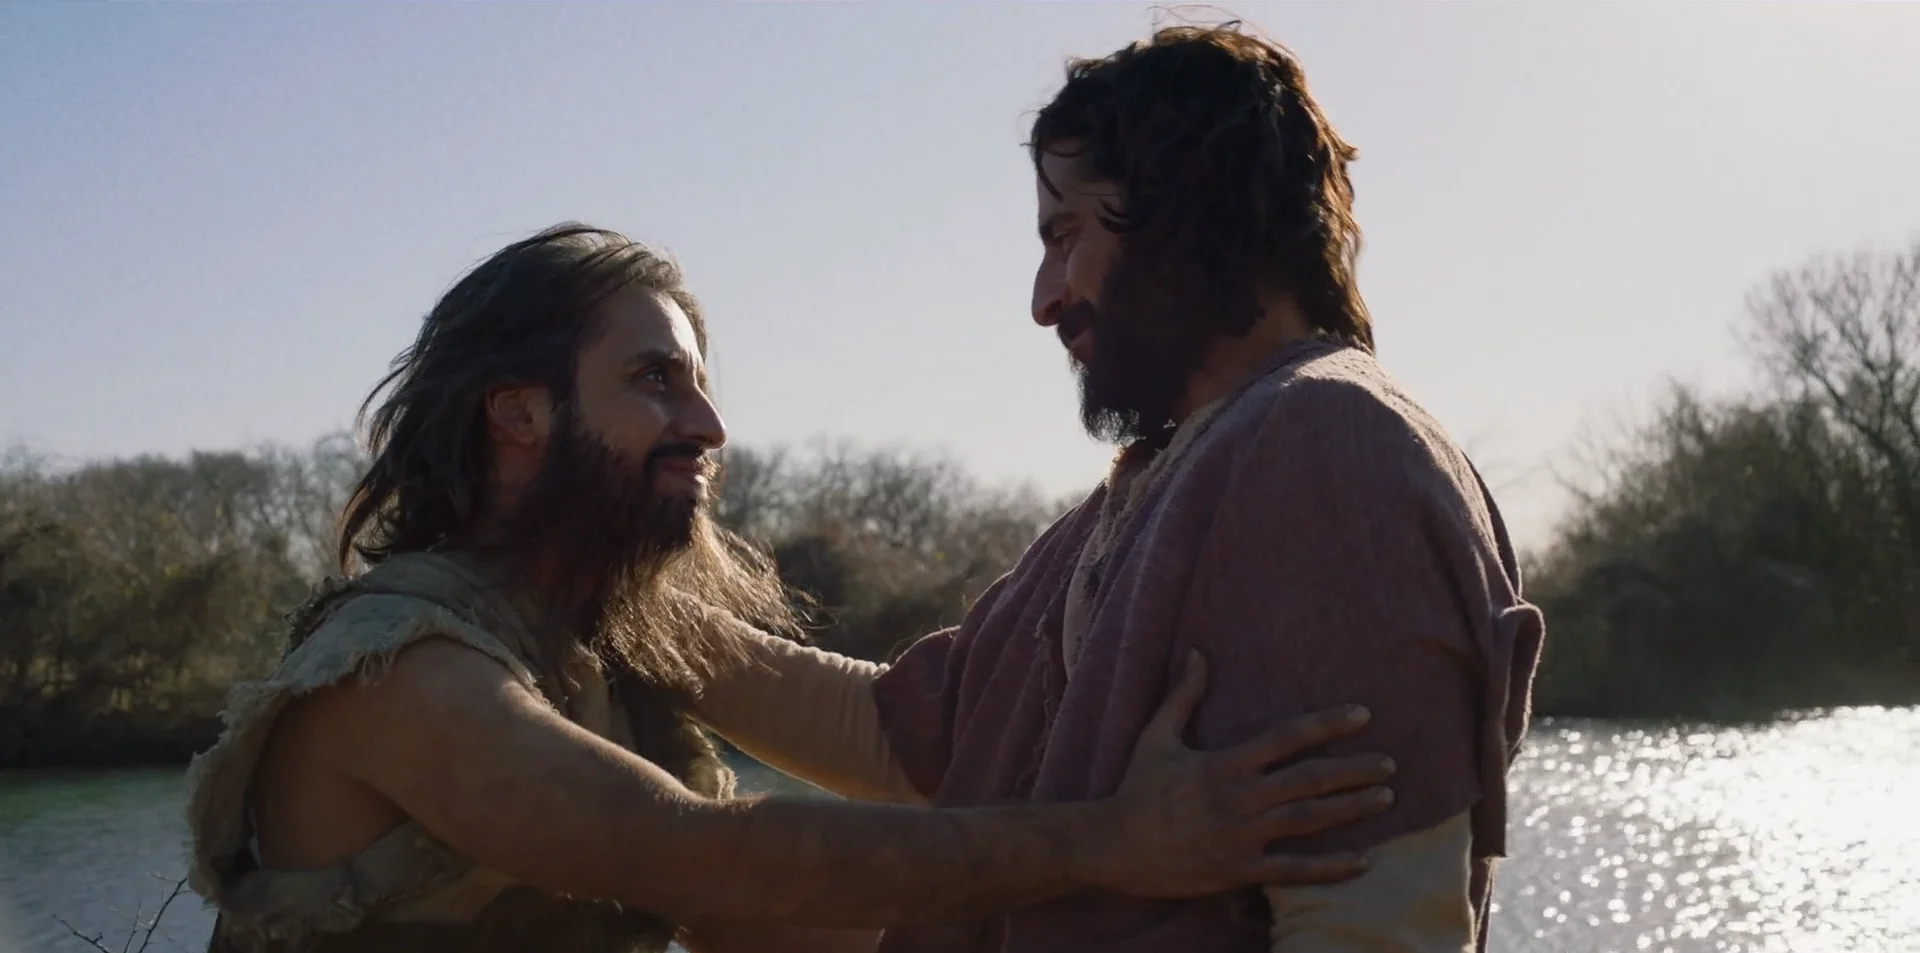 Jesus talks to John the Baptist